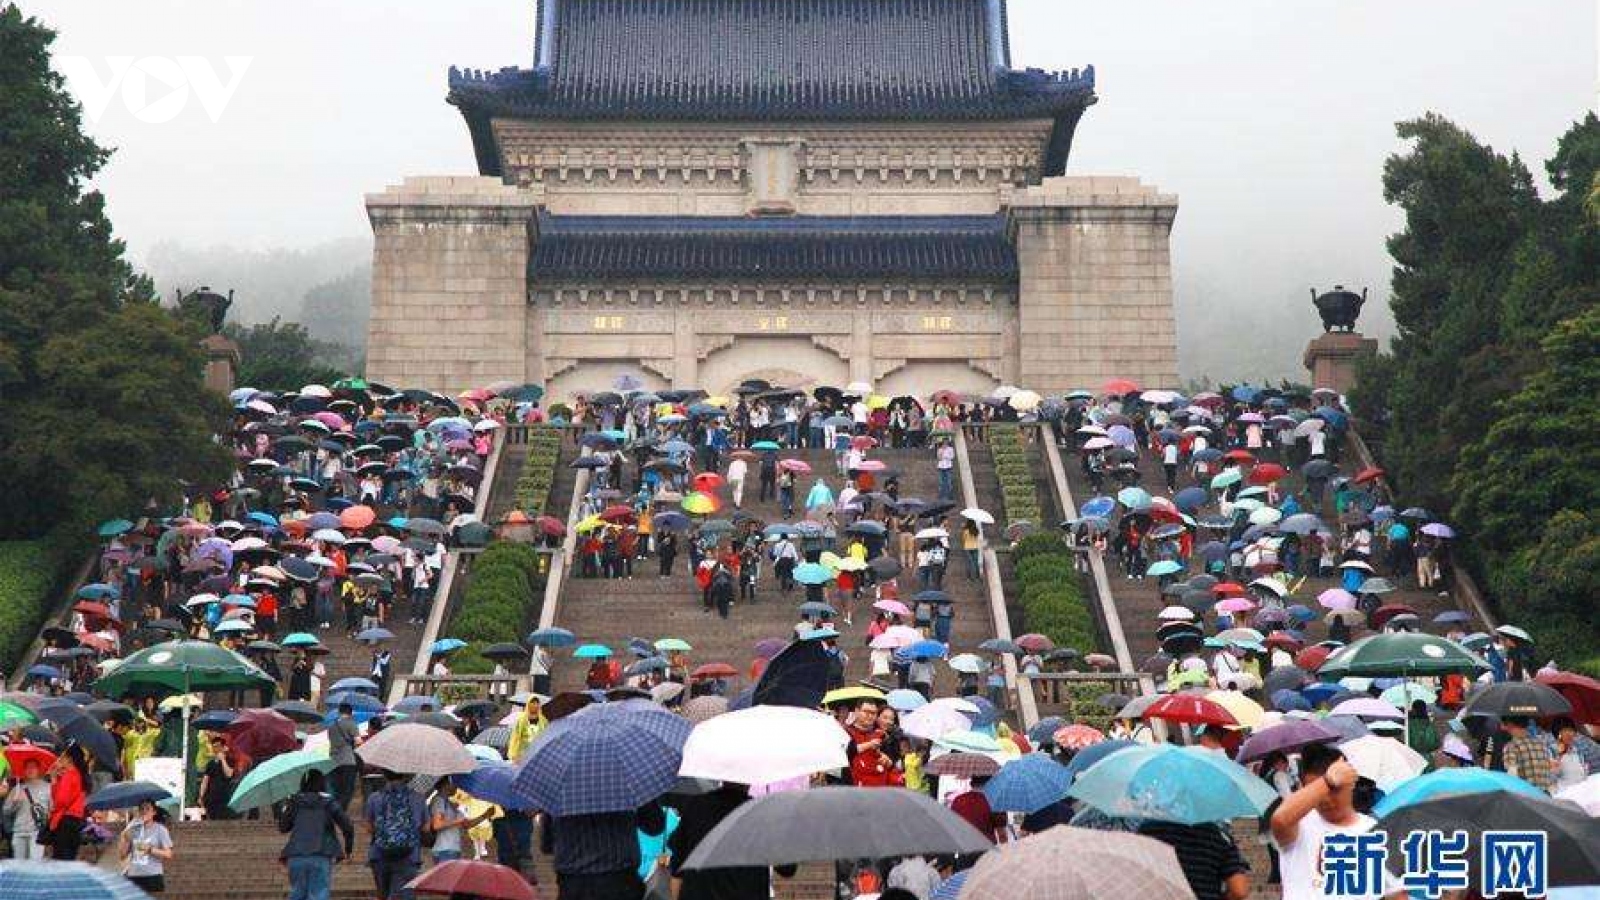 Trung Quốc: hơn 600 triệu lượt người đi du lịch dịp nghỉ Quốc khánh và Trung Thu